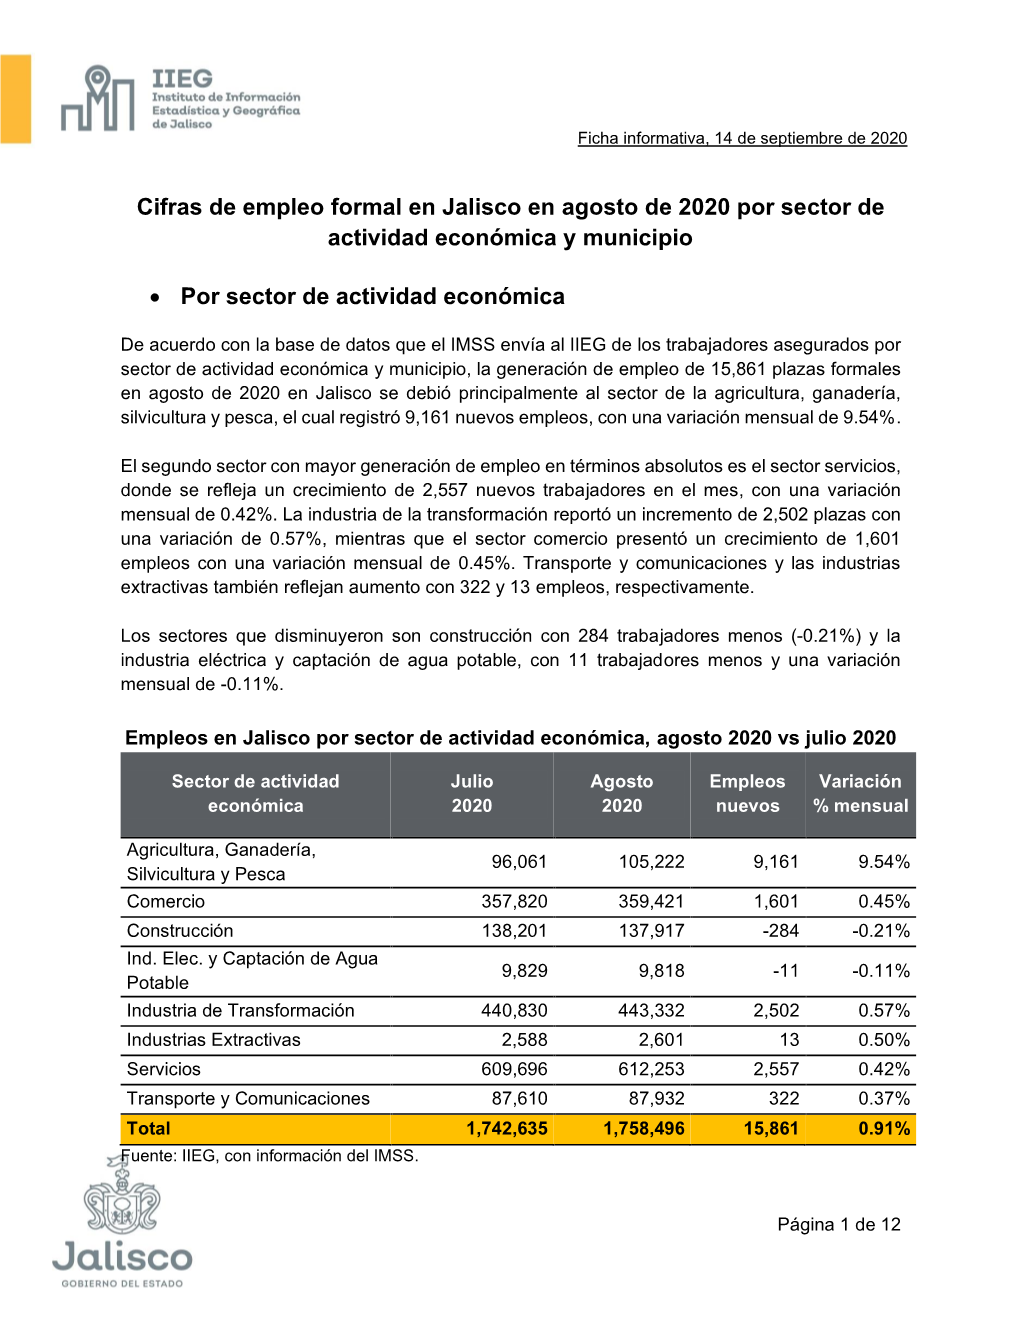 Cifras De Empleo Formal En Jalisco En Agosto De 2020 Por Sector De Actividad Económica Y Municipio